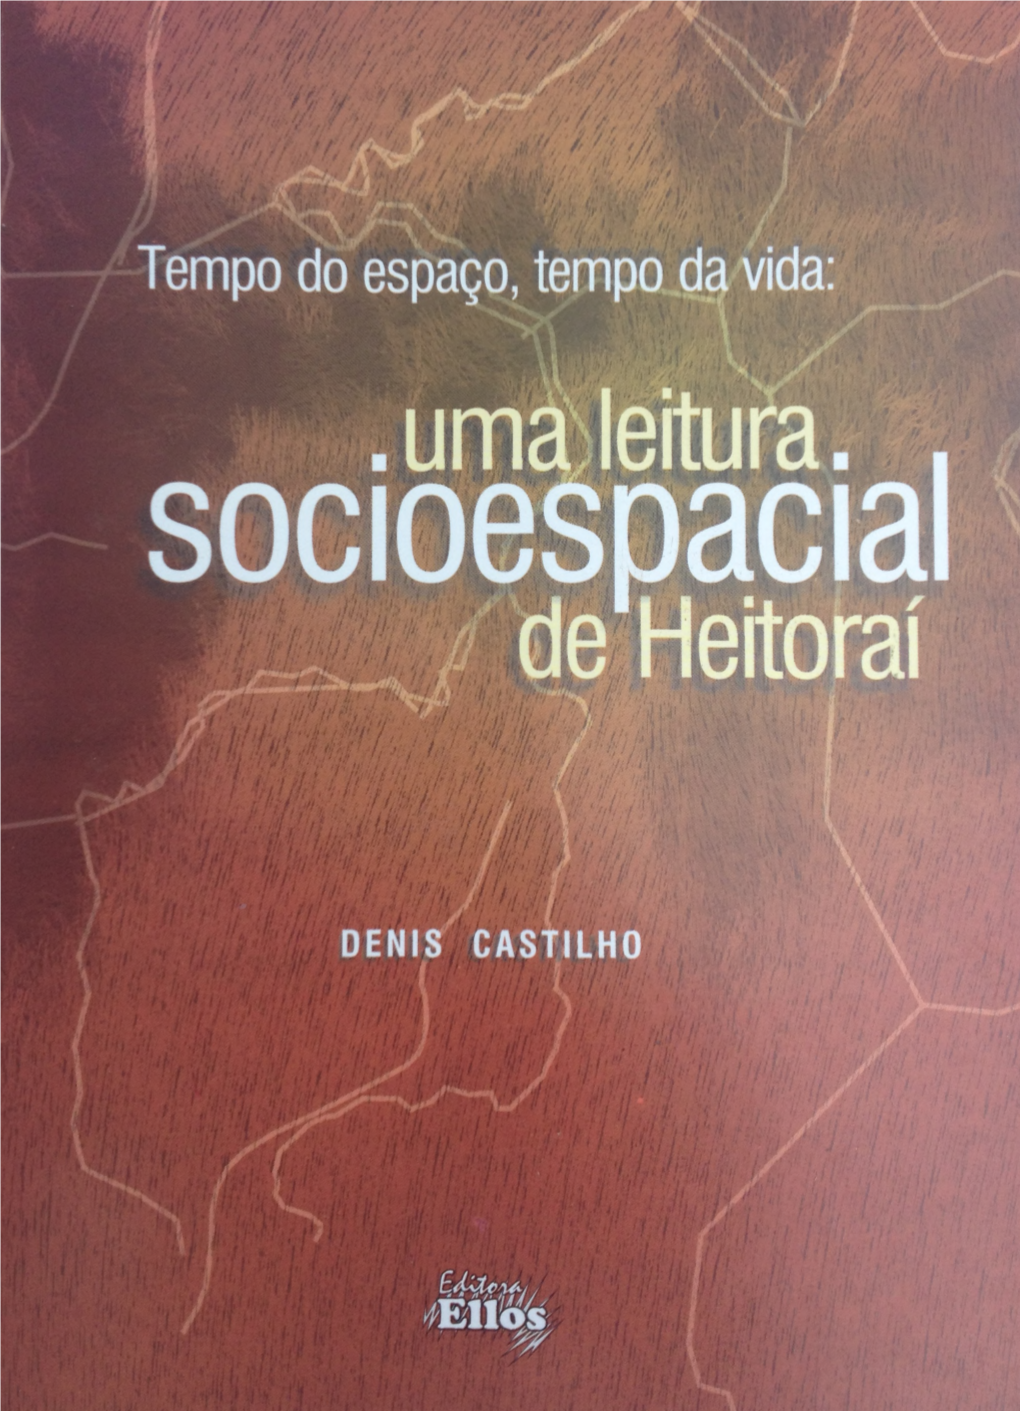 Denis Castilho